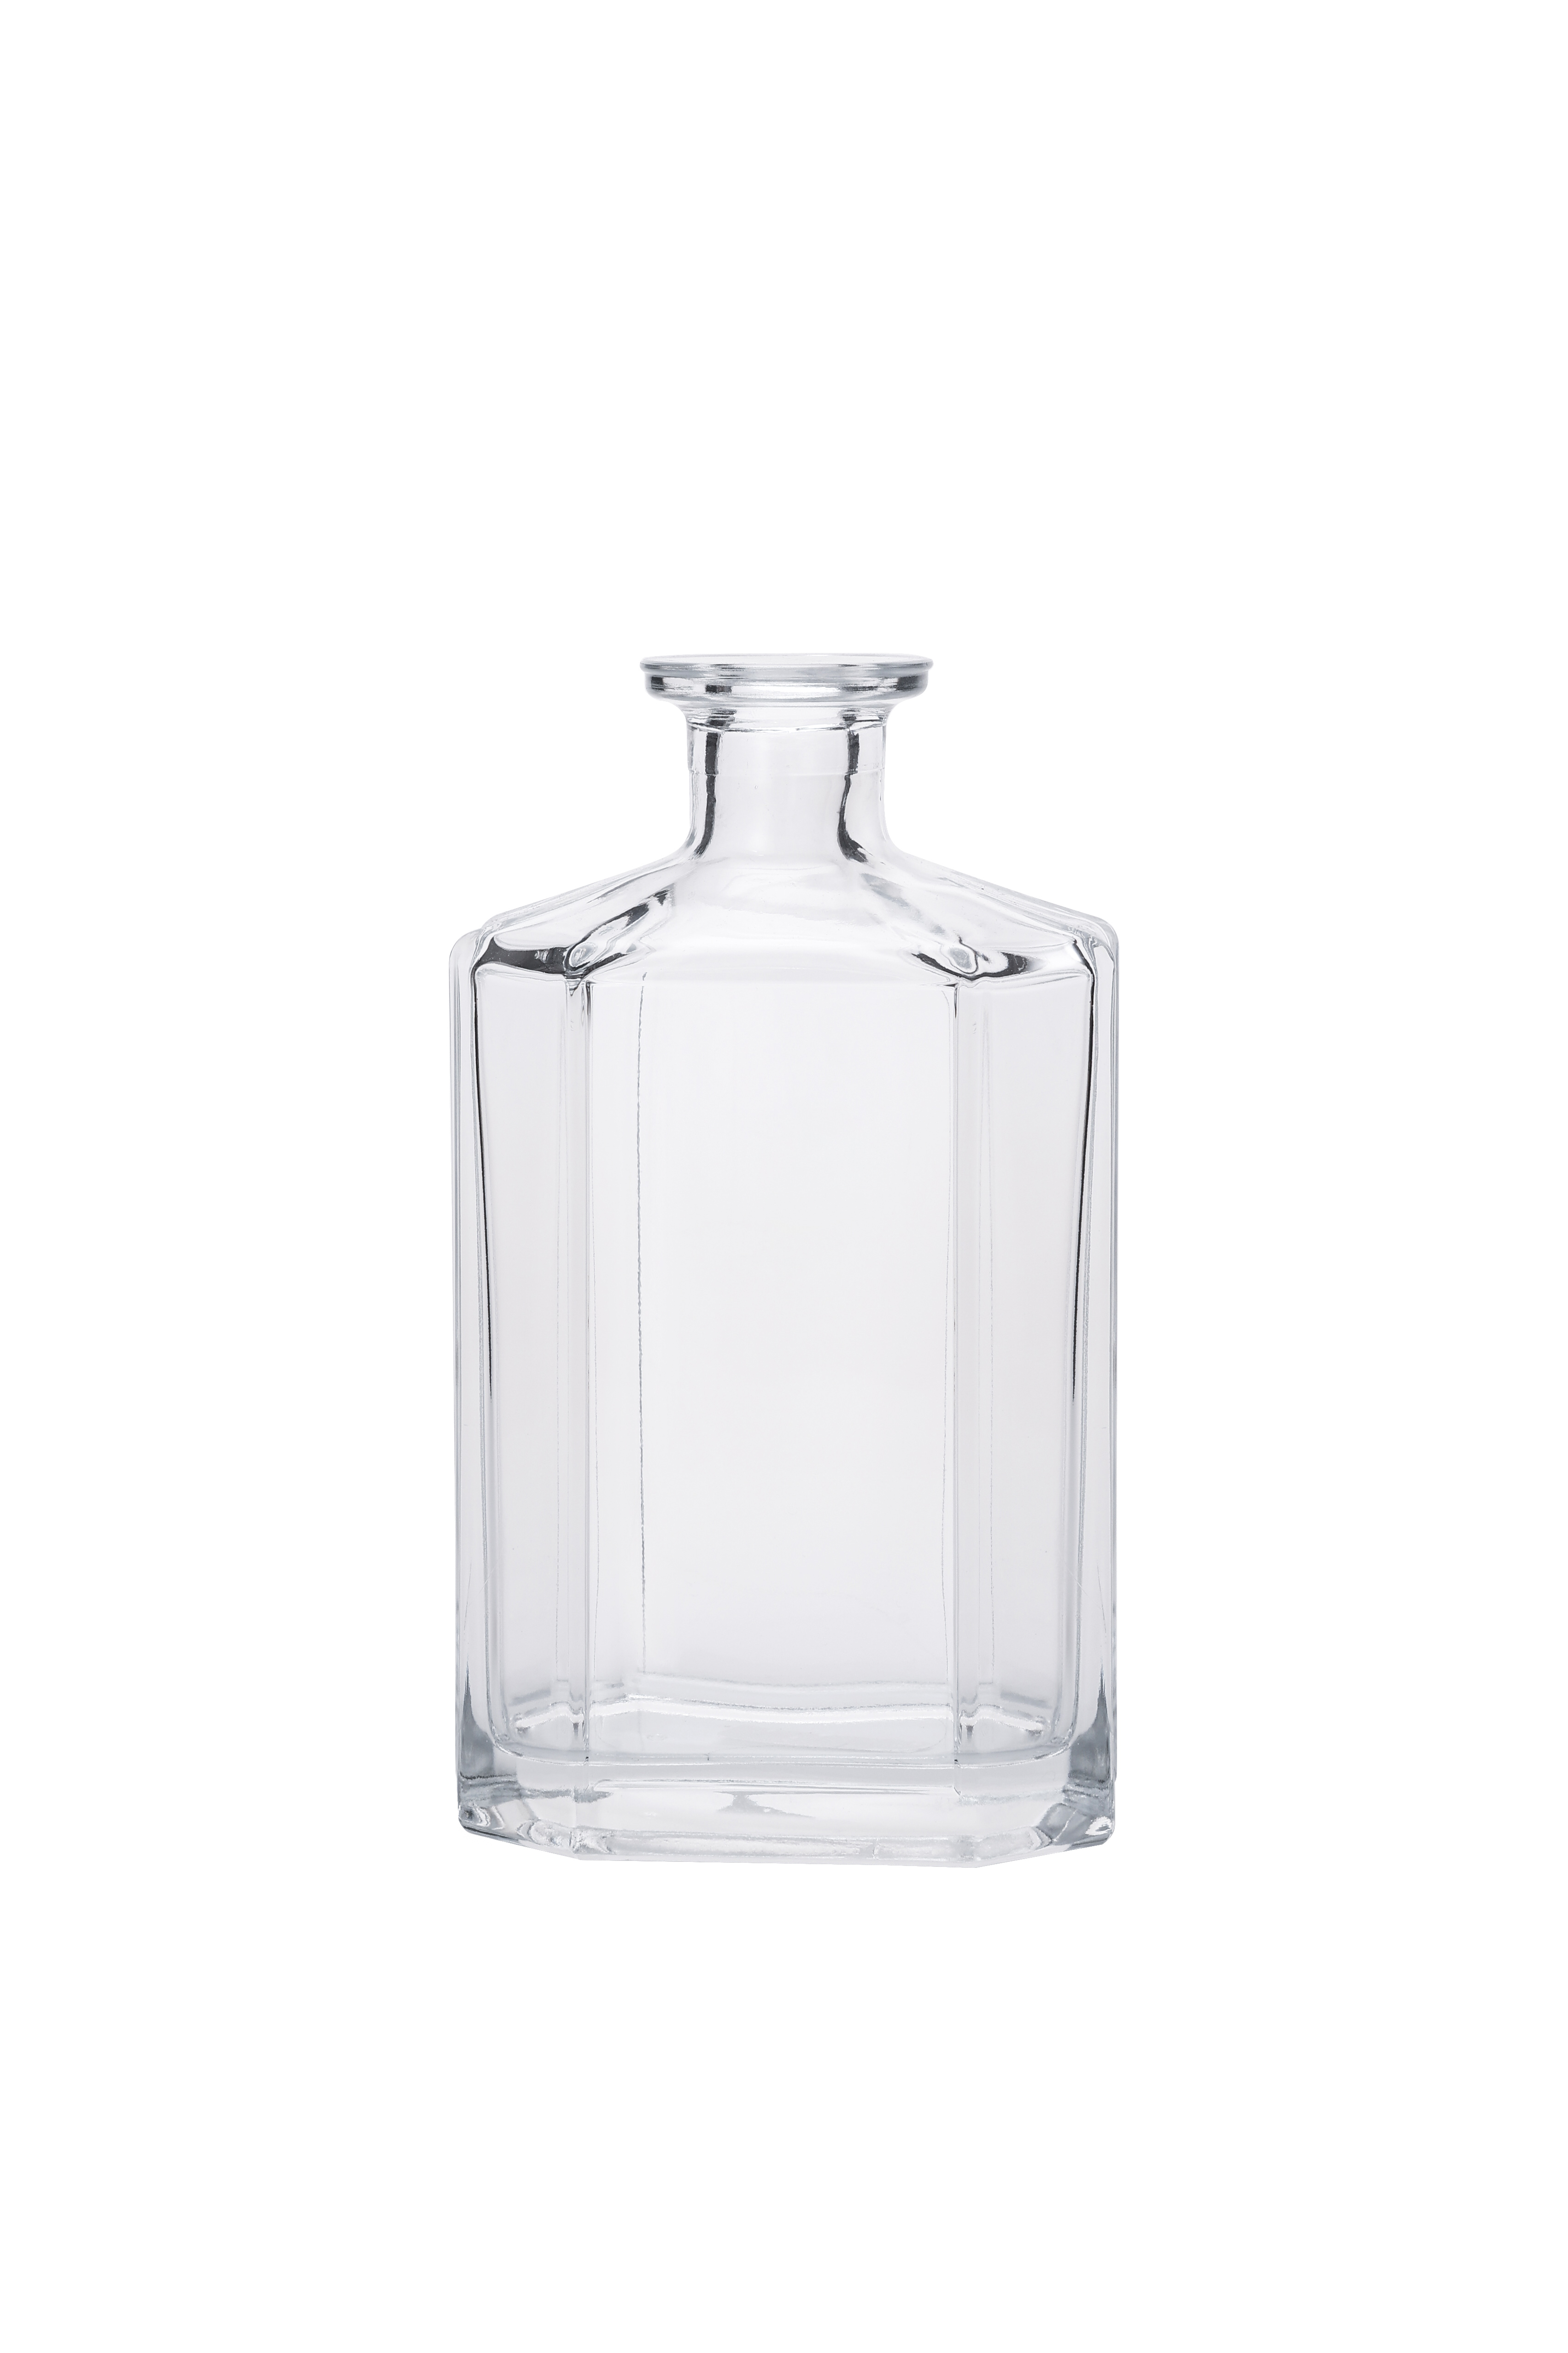 Custom Empty Glass Bottle for Gin Vodka Whisky Tequila Liquor Alcohol Spirits